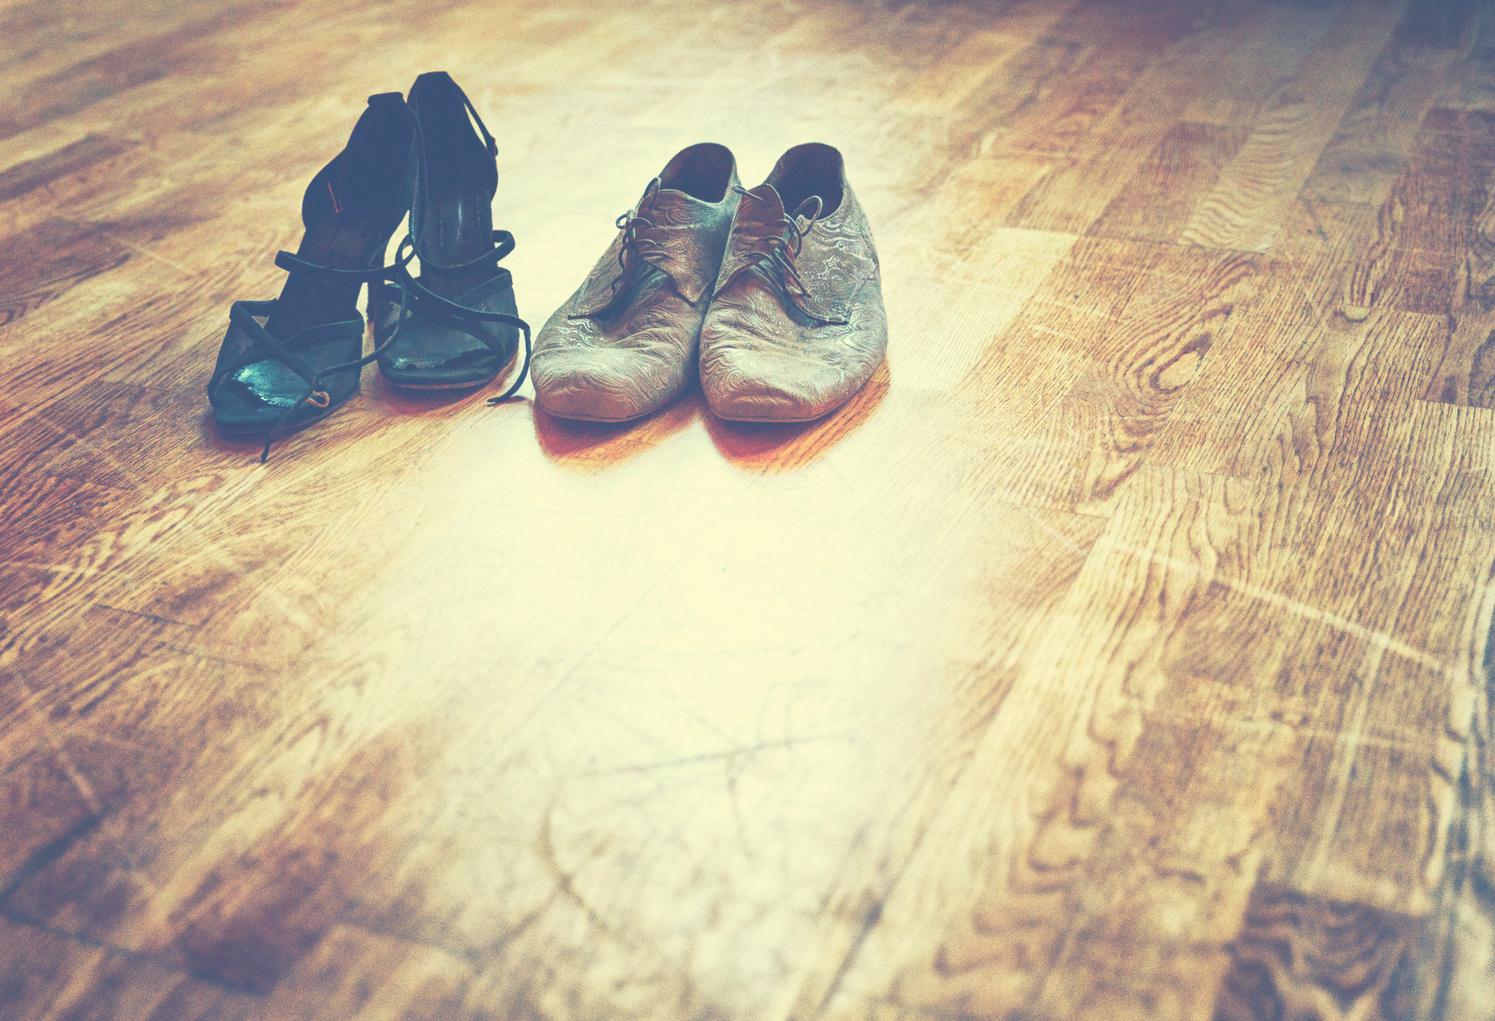 Dancing shoe